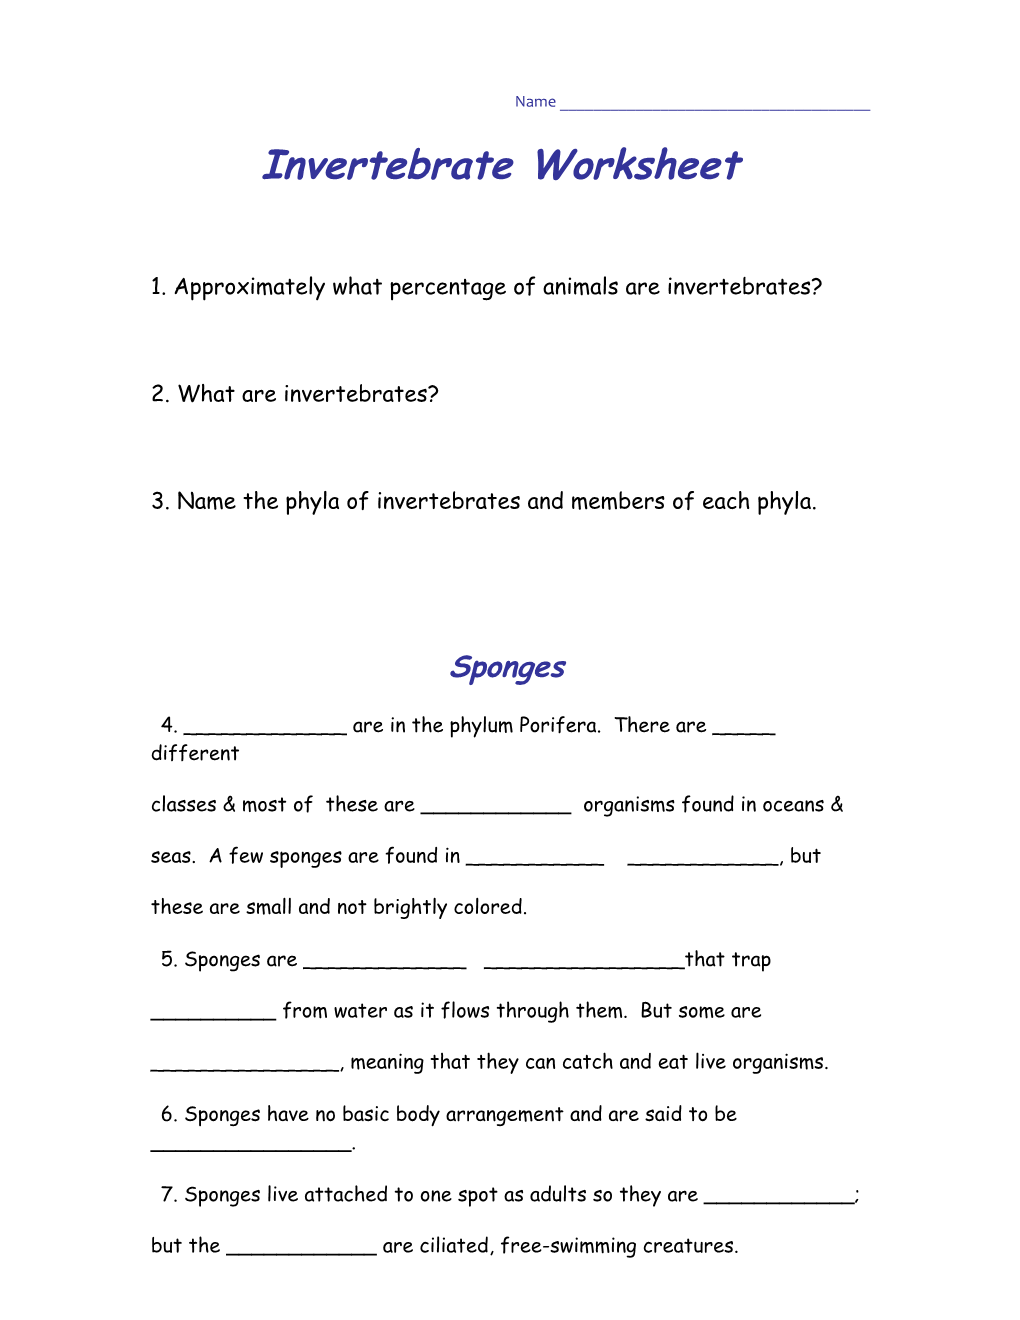 Online Invertebrate Sponge Worksheet